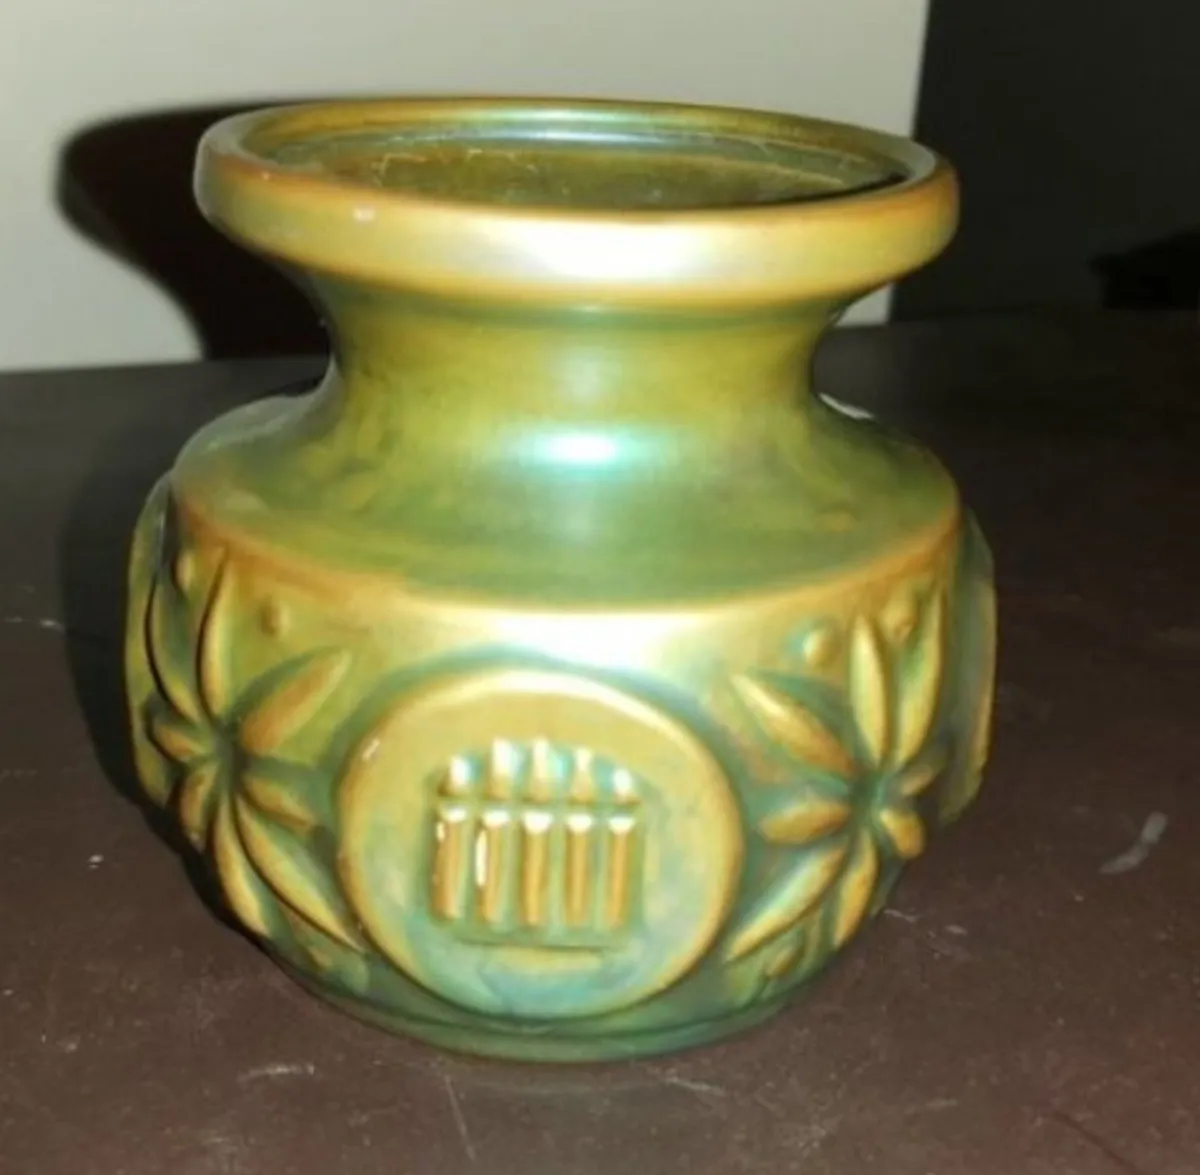 Rare Eozin coated vase - Image 1